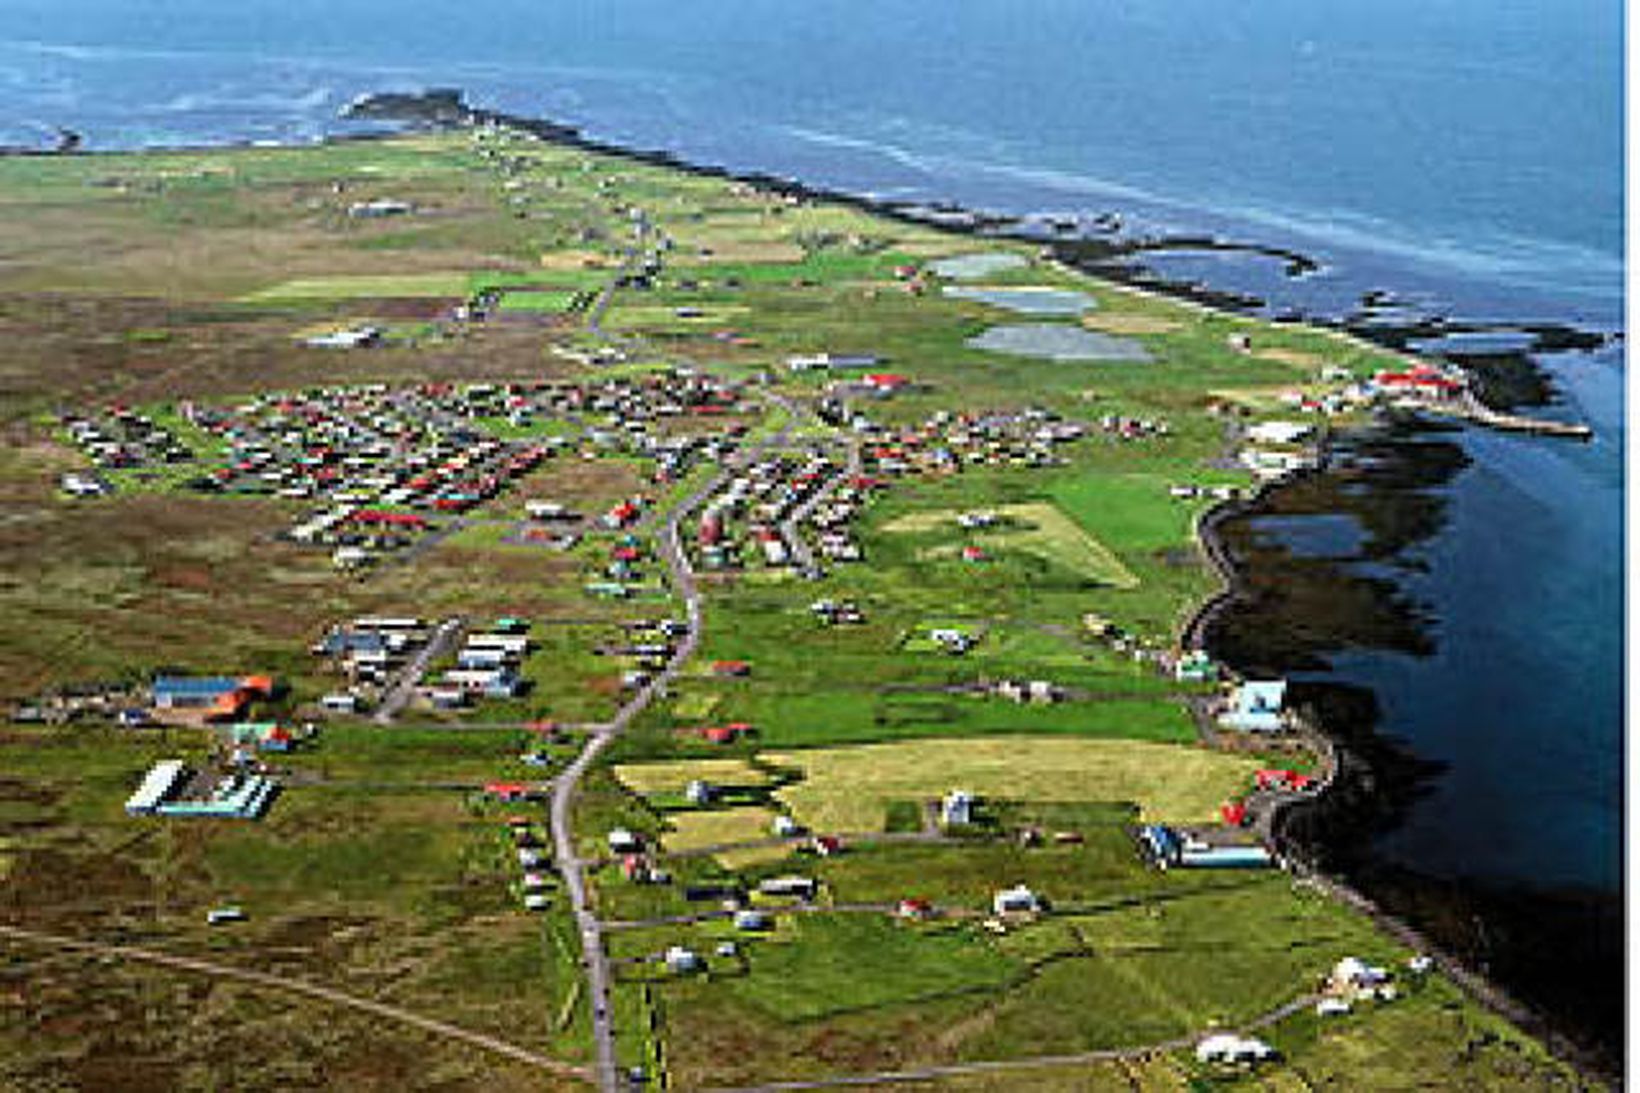 Drjúgur spölur er úr Garði til vinnu í Reykjavík.